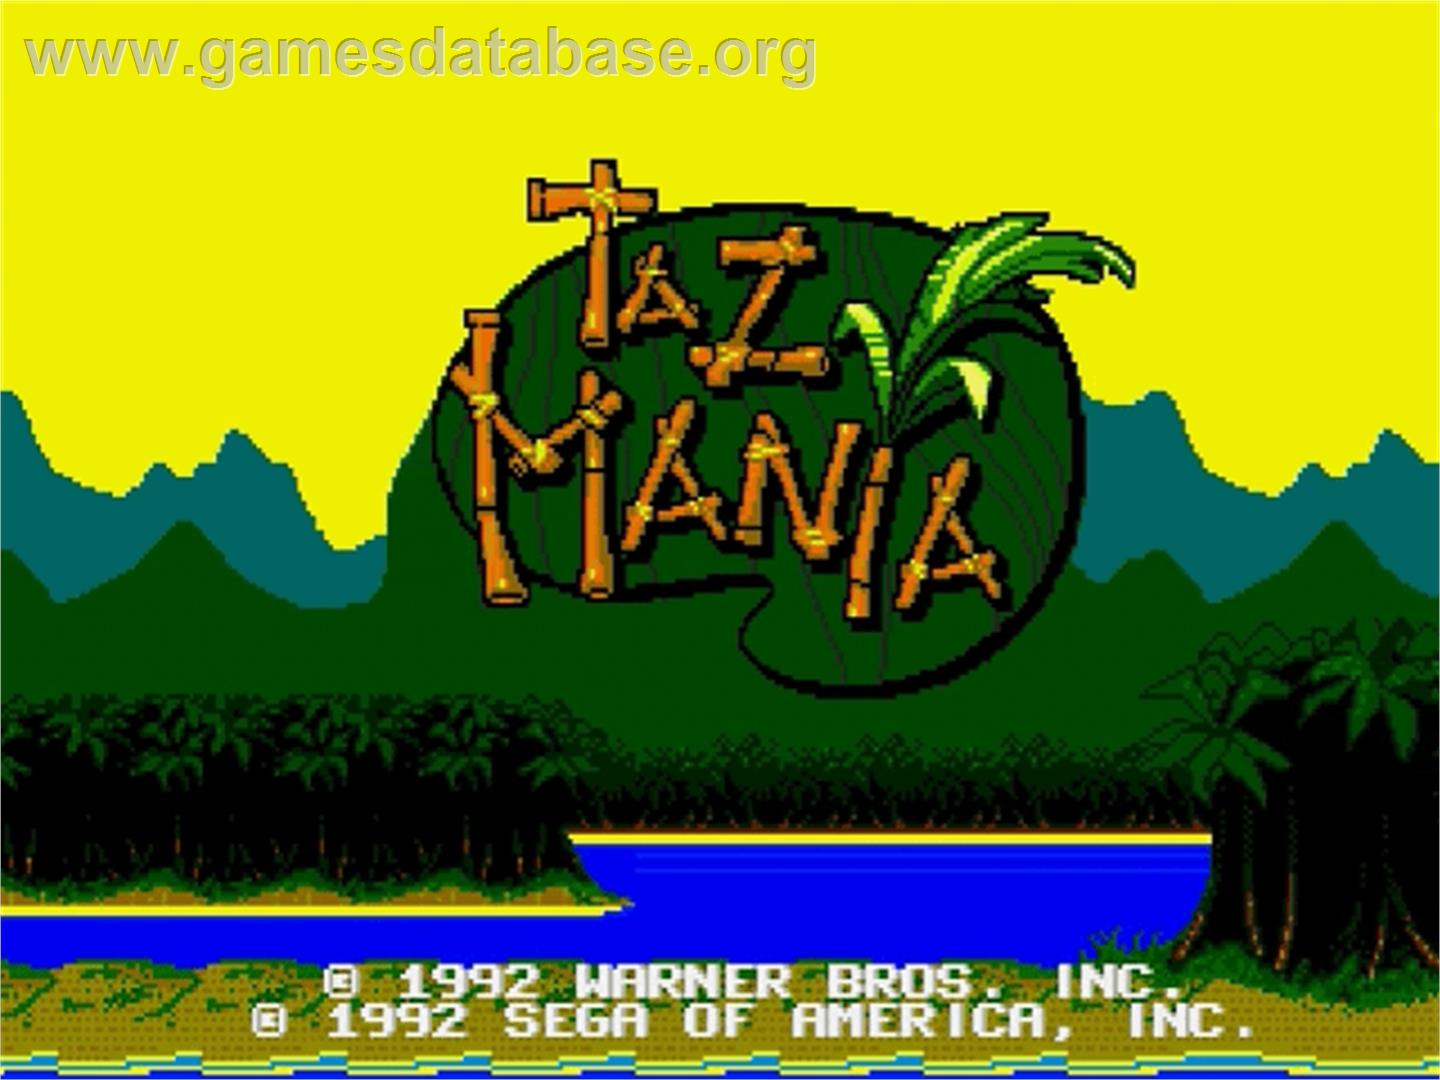 Taz-Mania - Sega Genesis - Artwork - Title Screen